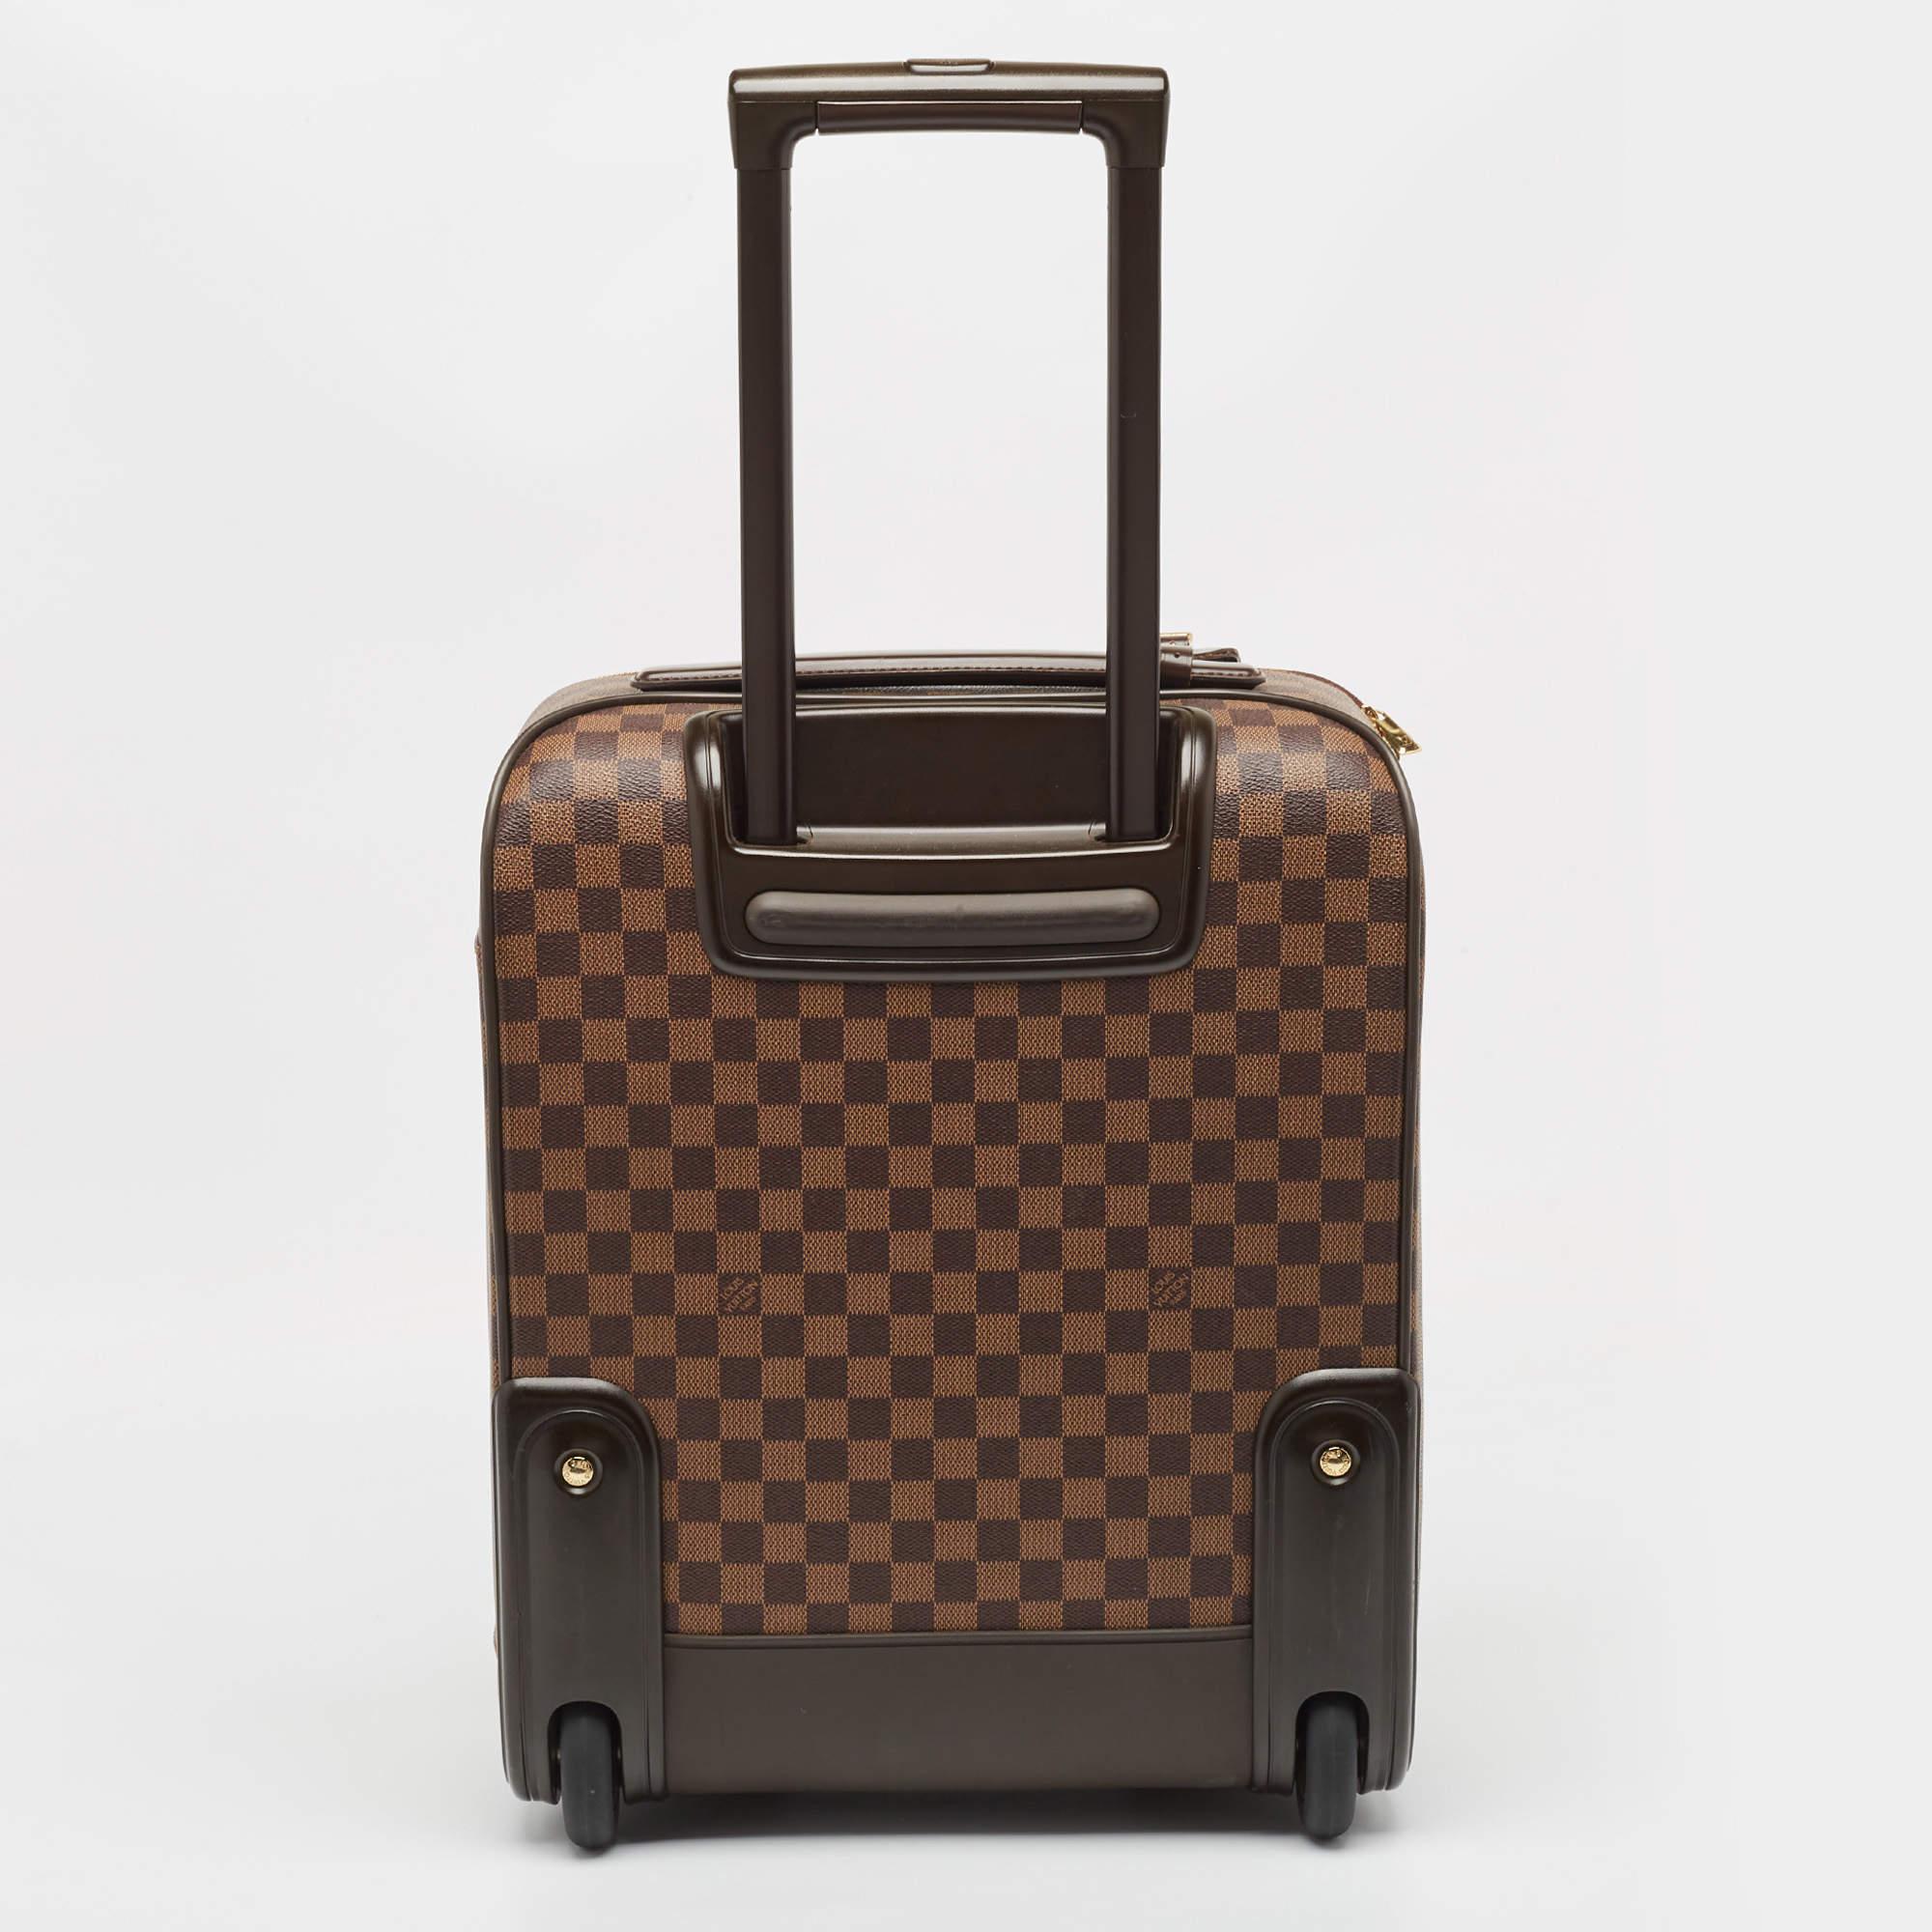 Das Gepäckstück Pegase 45 von Louis Vuitton ist aus dem kultigen Damier Ebene Canvas gefertigt und verbindet Stil und Funktionalität nahtlos miteinander. Der geräumige Innenraum wird durch mehrere Fächer ergänzt, die eine mühelose Organisation